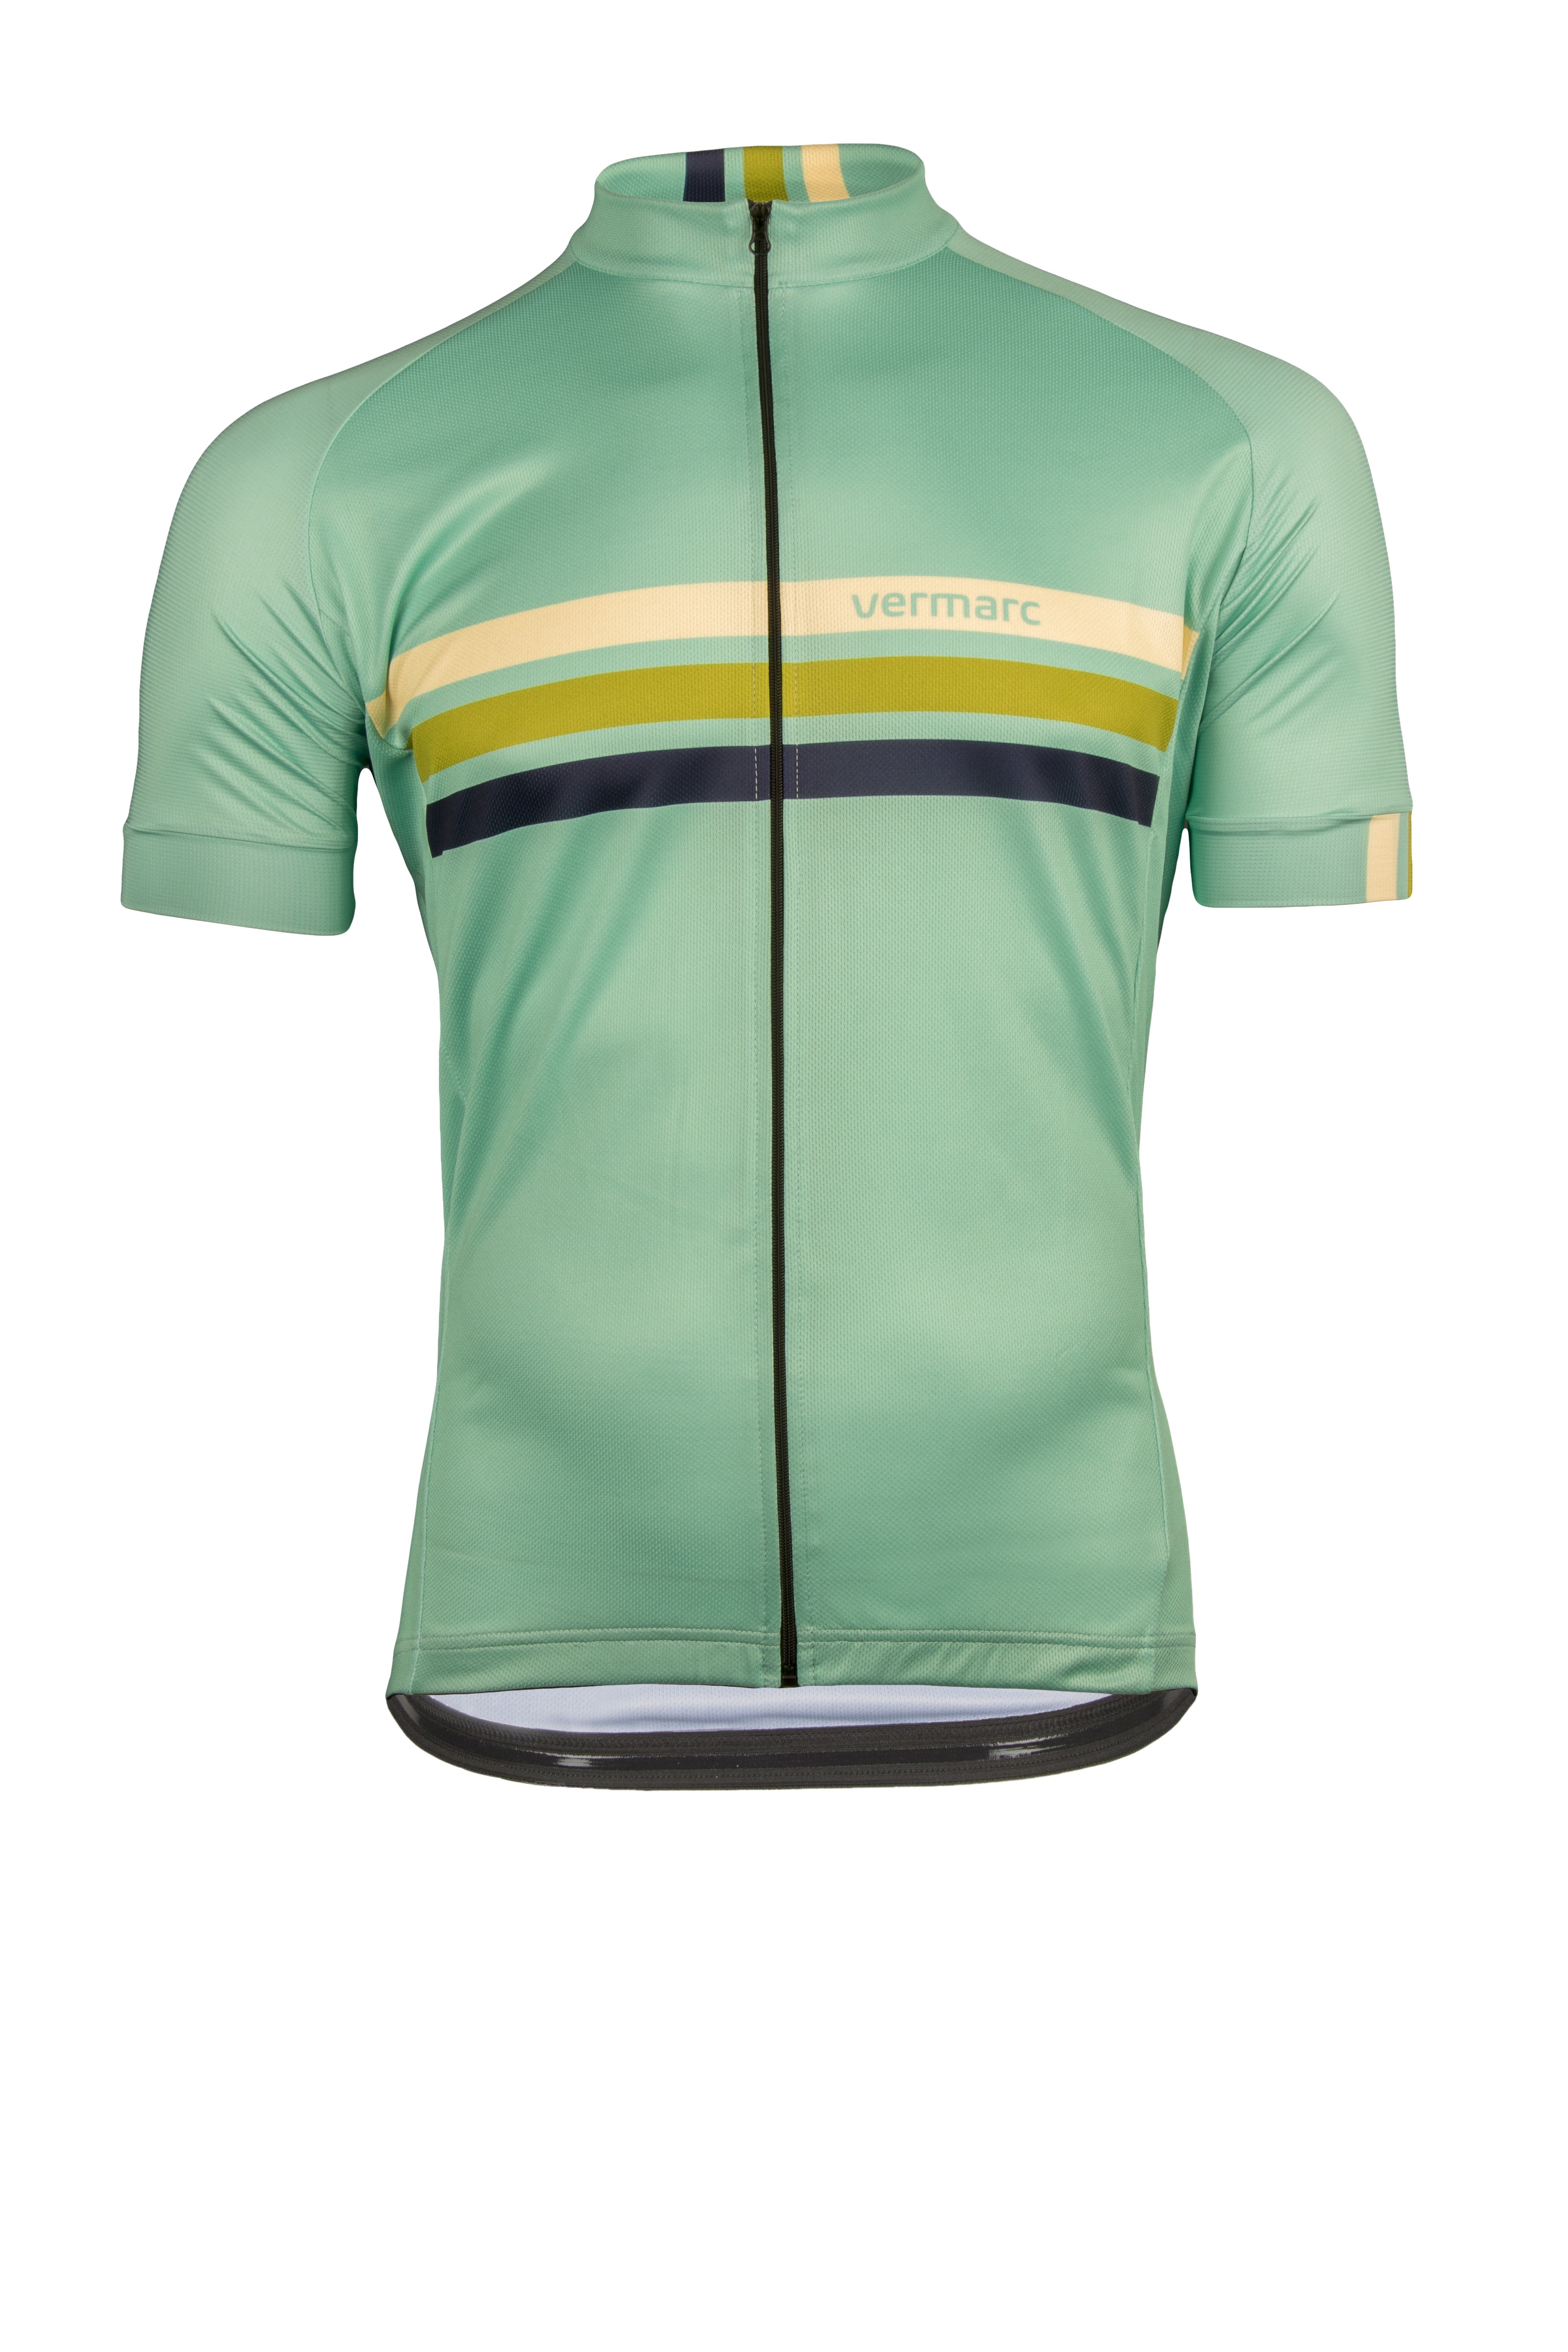 Vermarc prestige maillot de cyclisme manches courtes vert